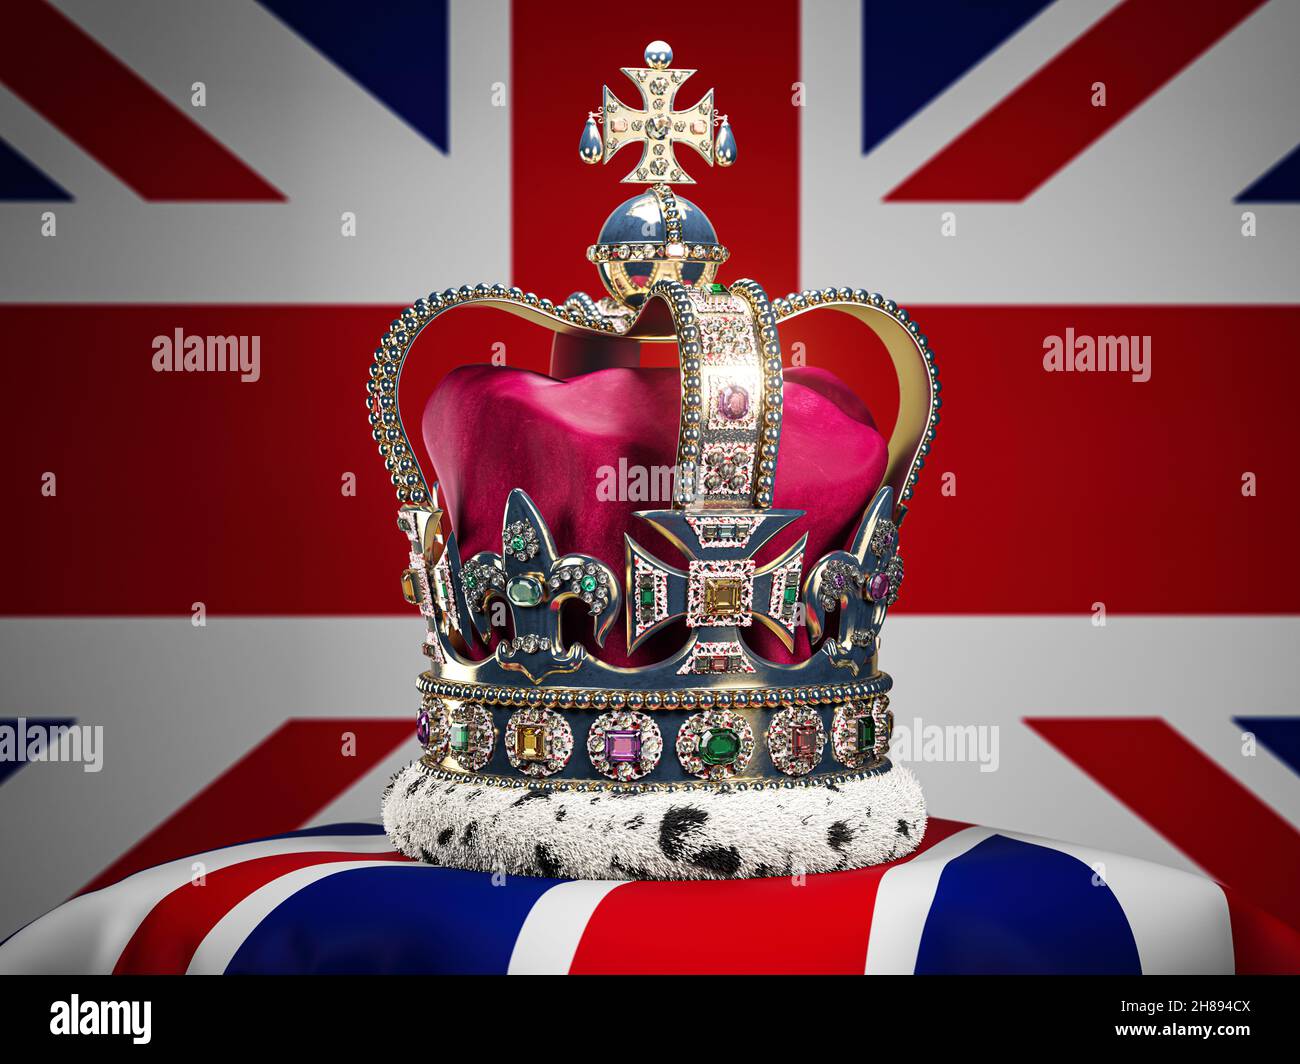 Couronne impériale royale sur fond de drapeau britannique.Symboles de la Grande-Bretagne Royaume-Uni monarchie.illustration 3d Banque D'Images